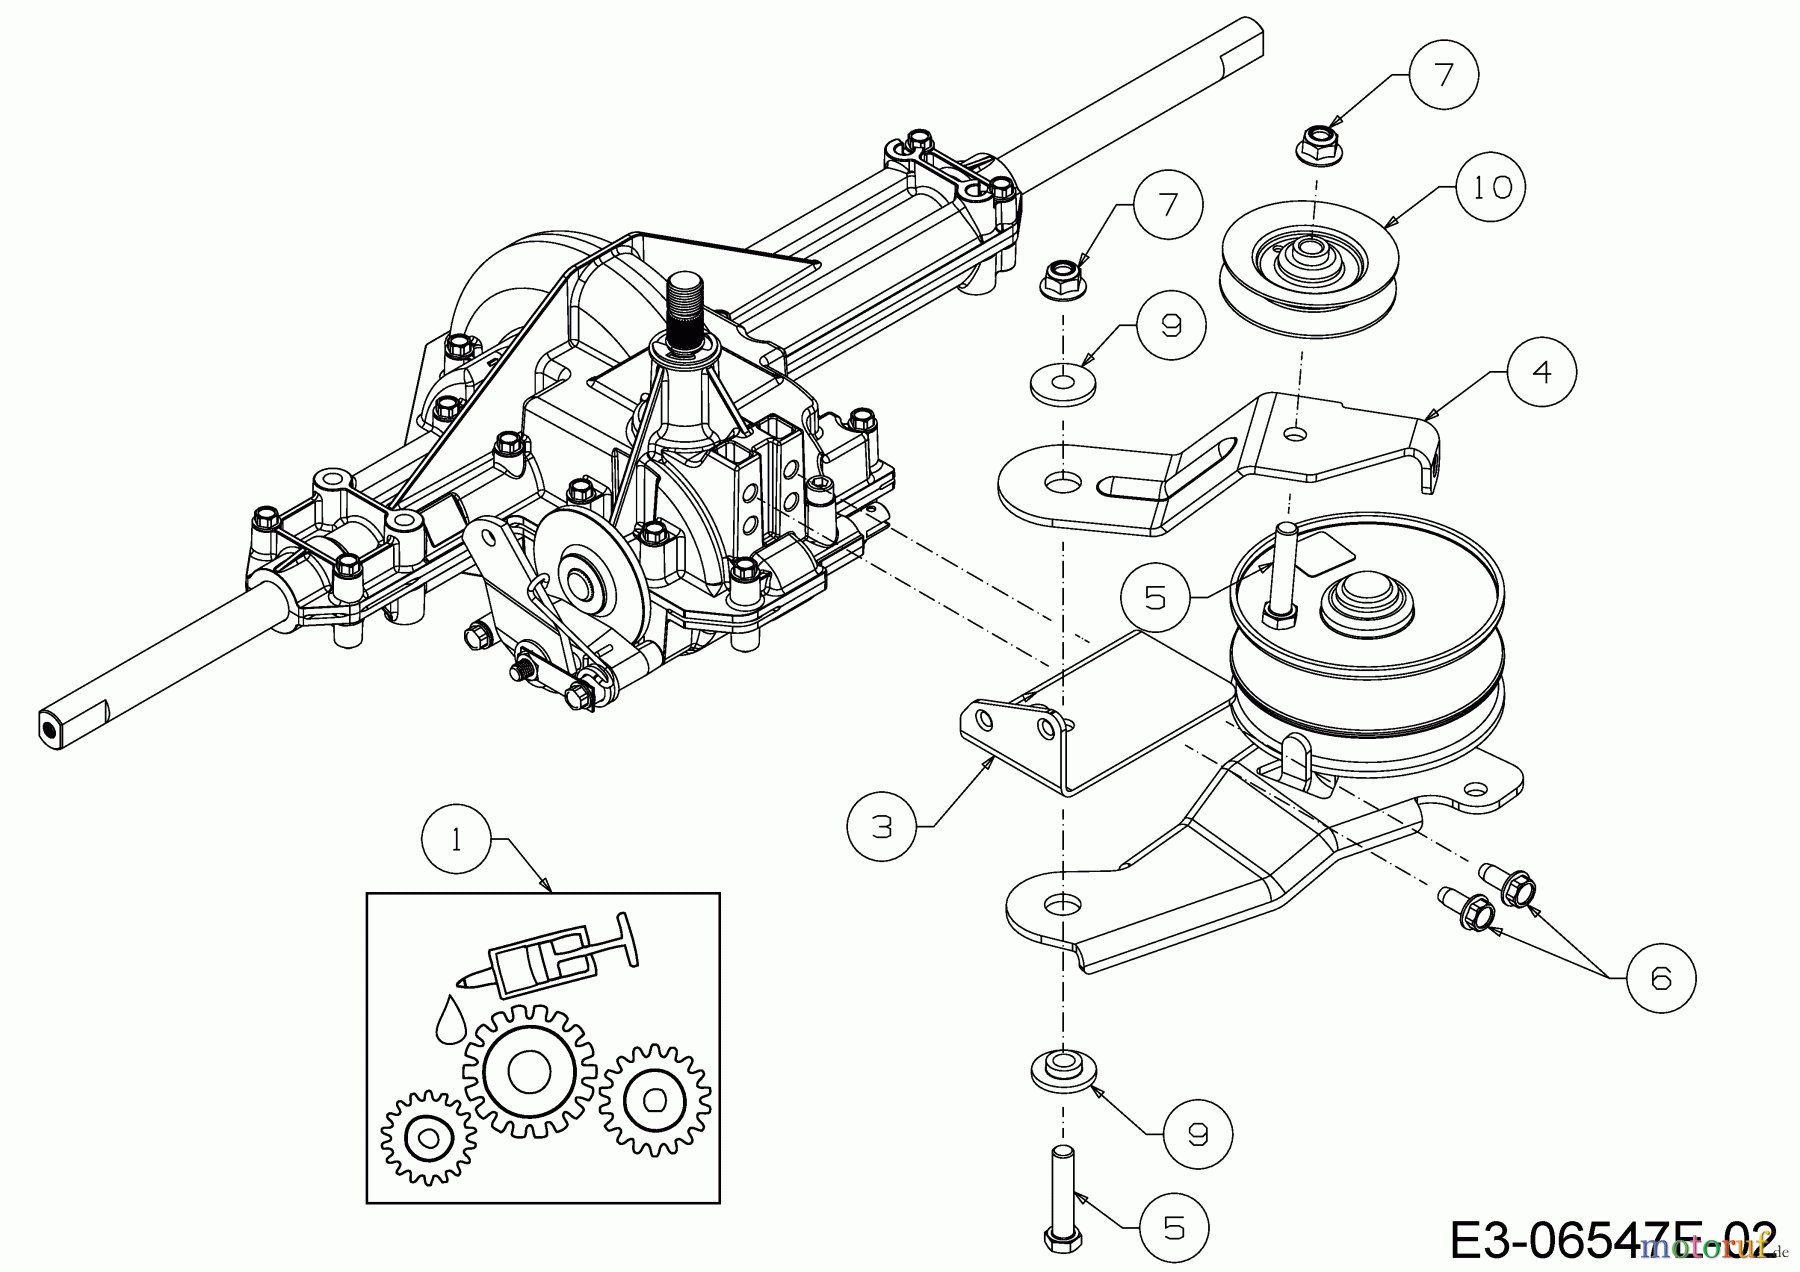  Mastercut Lawn tractors Mastercut 96 13A2765F659  (2018) Idle pullie gearbox